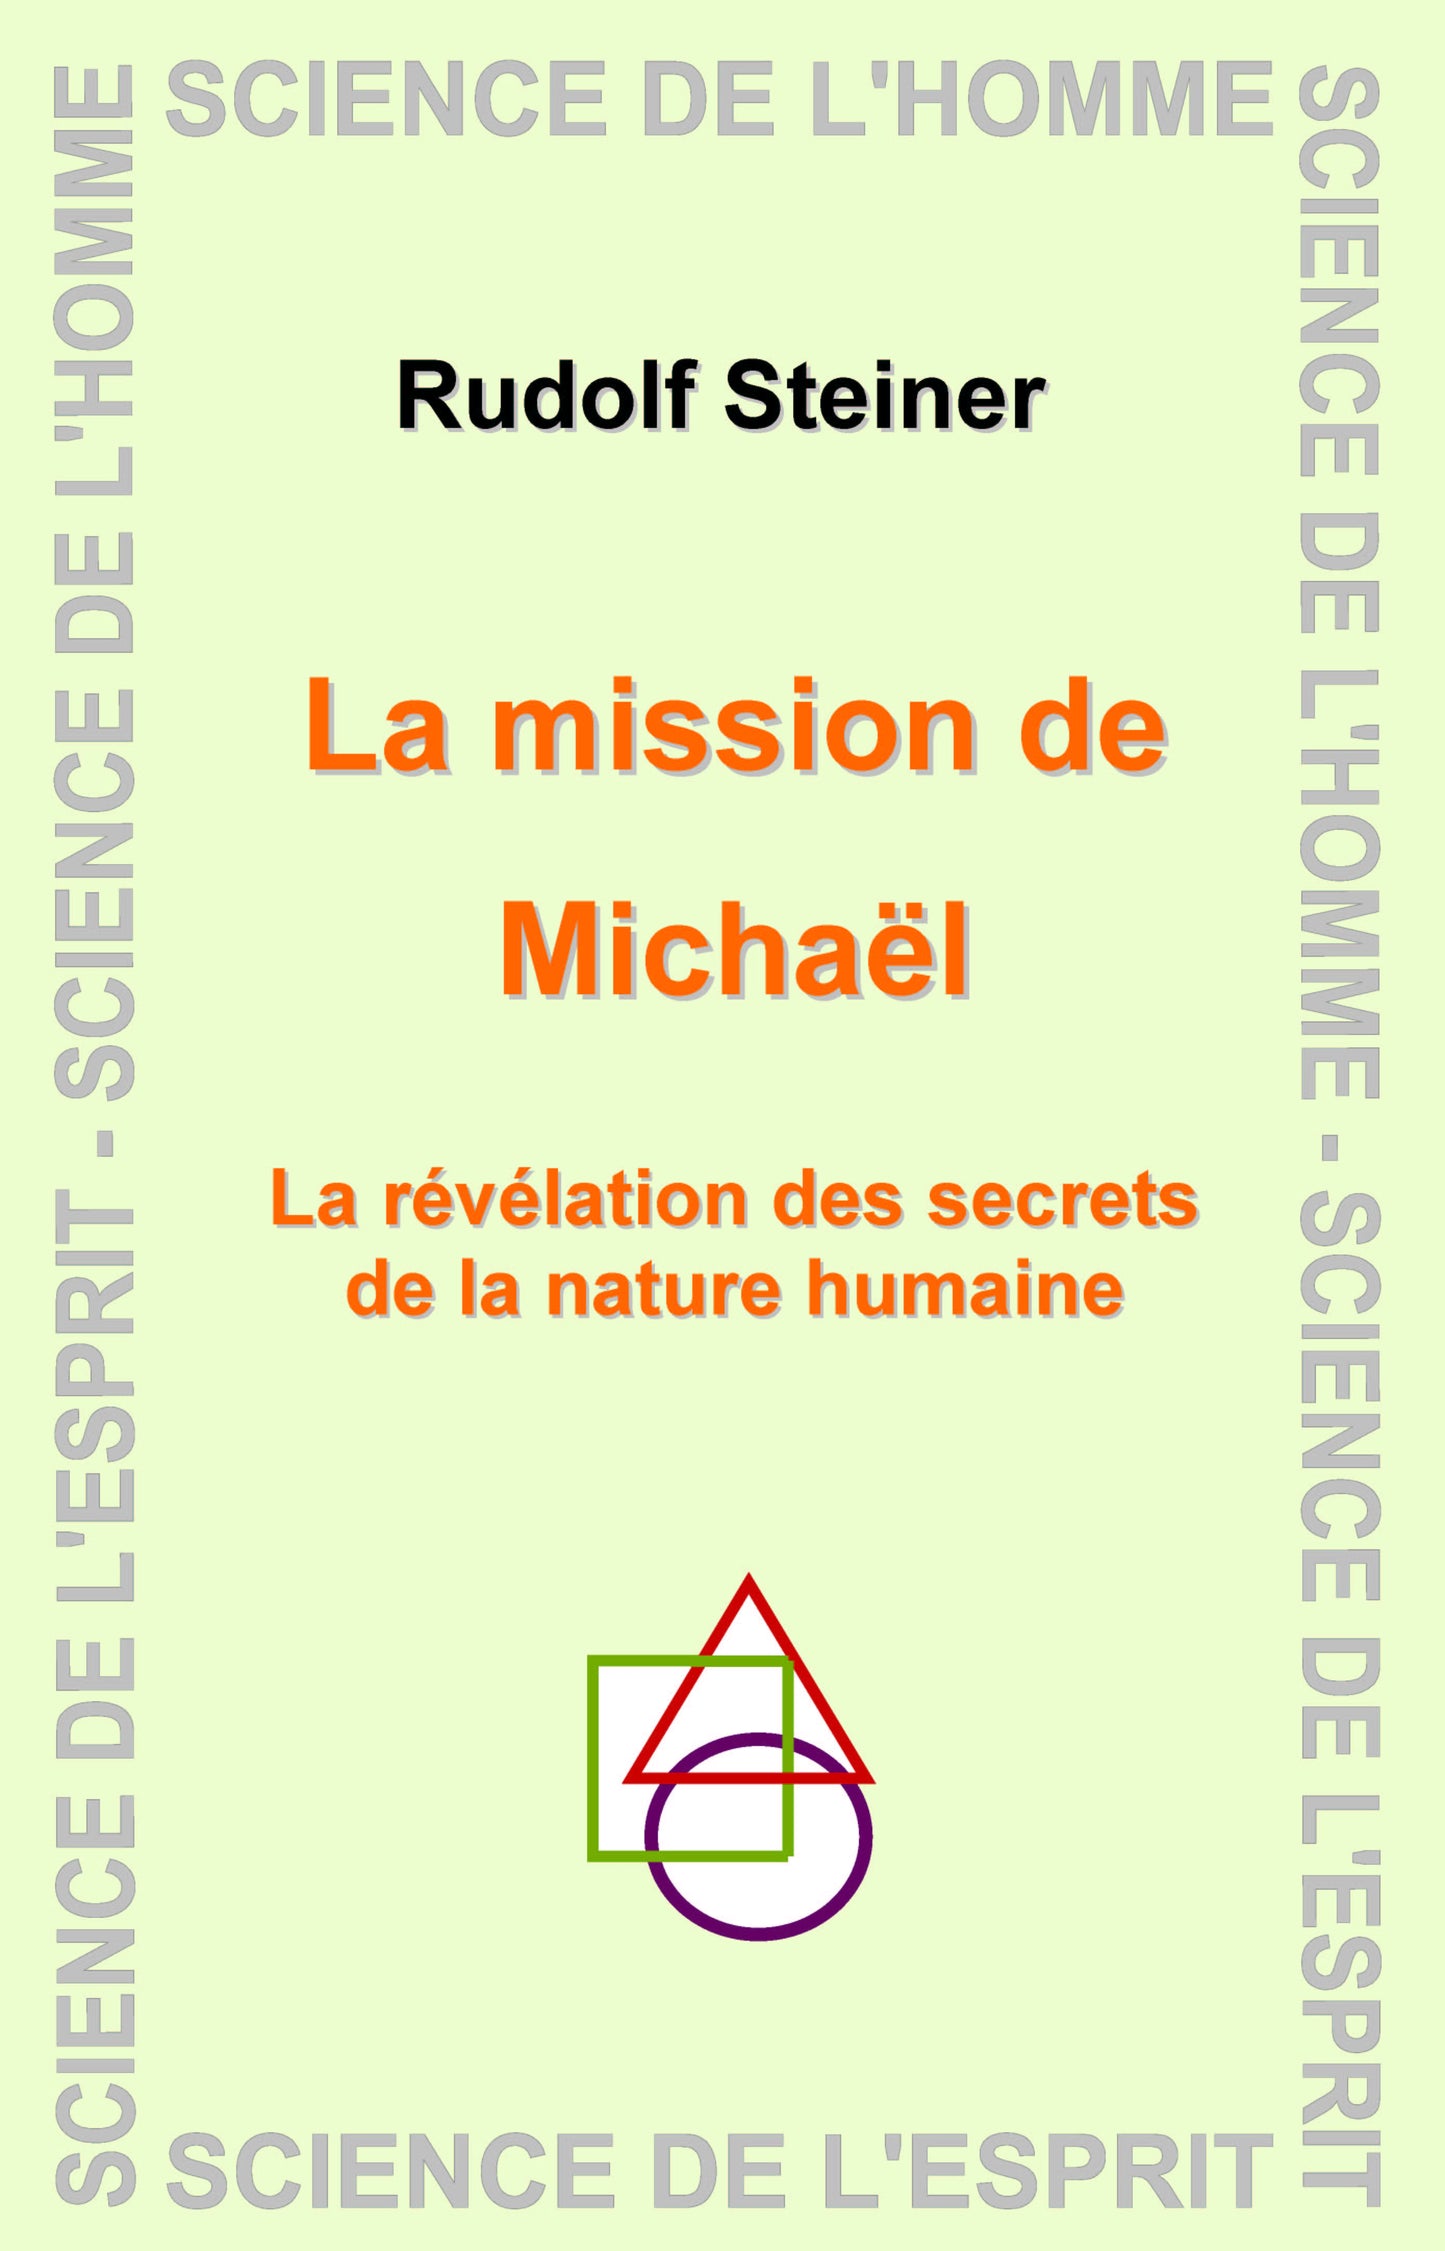 Mission de Michael - R Steiner GA194